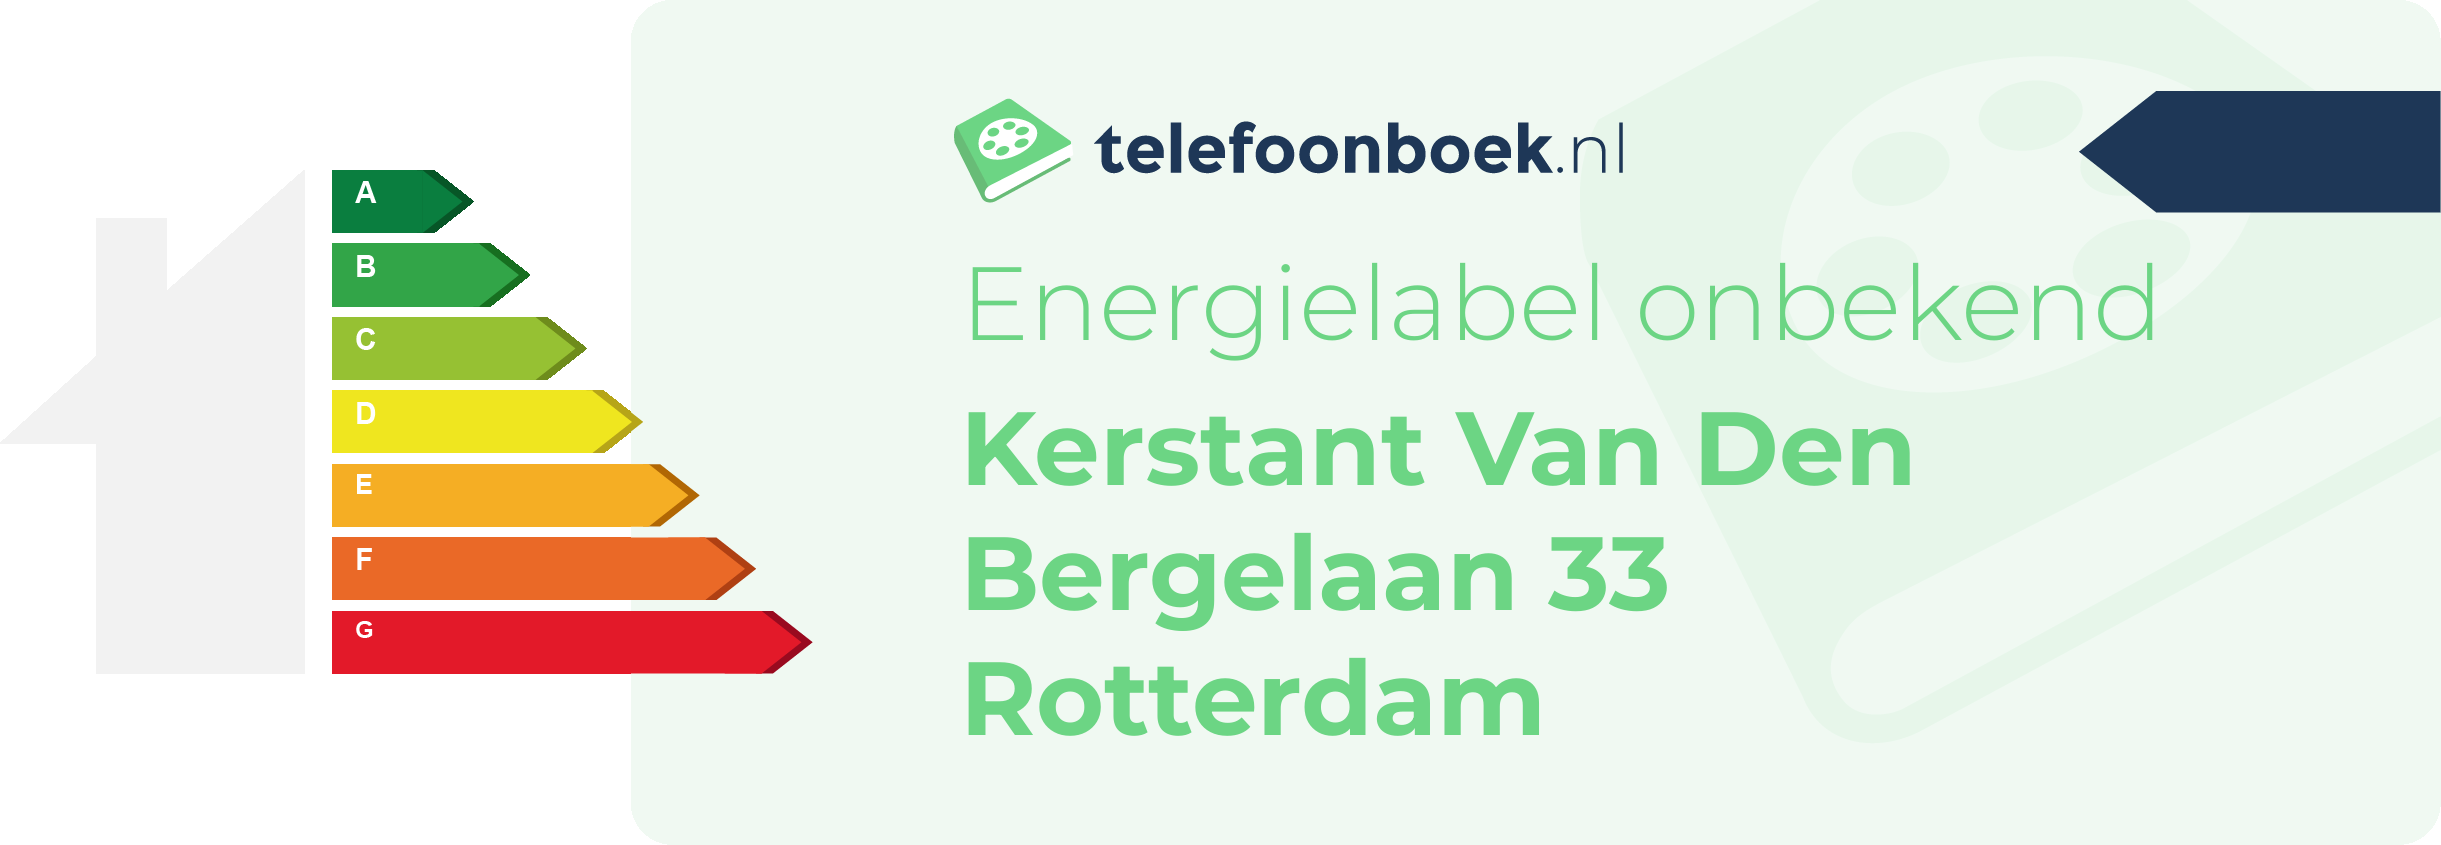 Energielabel Kerstant Van Den Bergelaan 33 Rotterdam